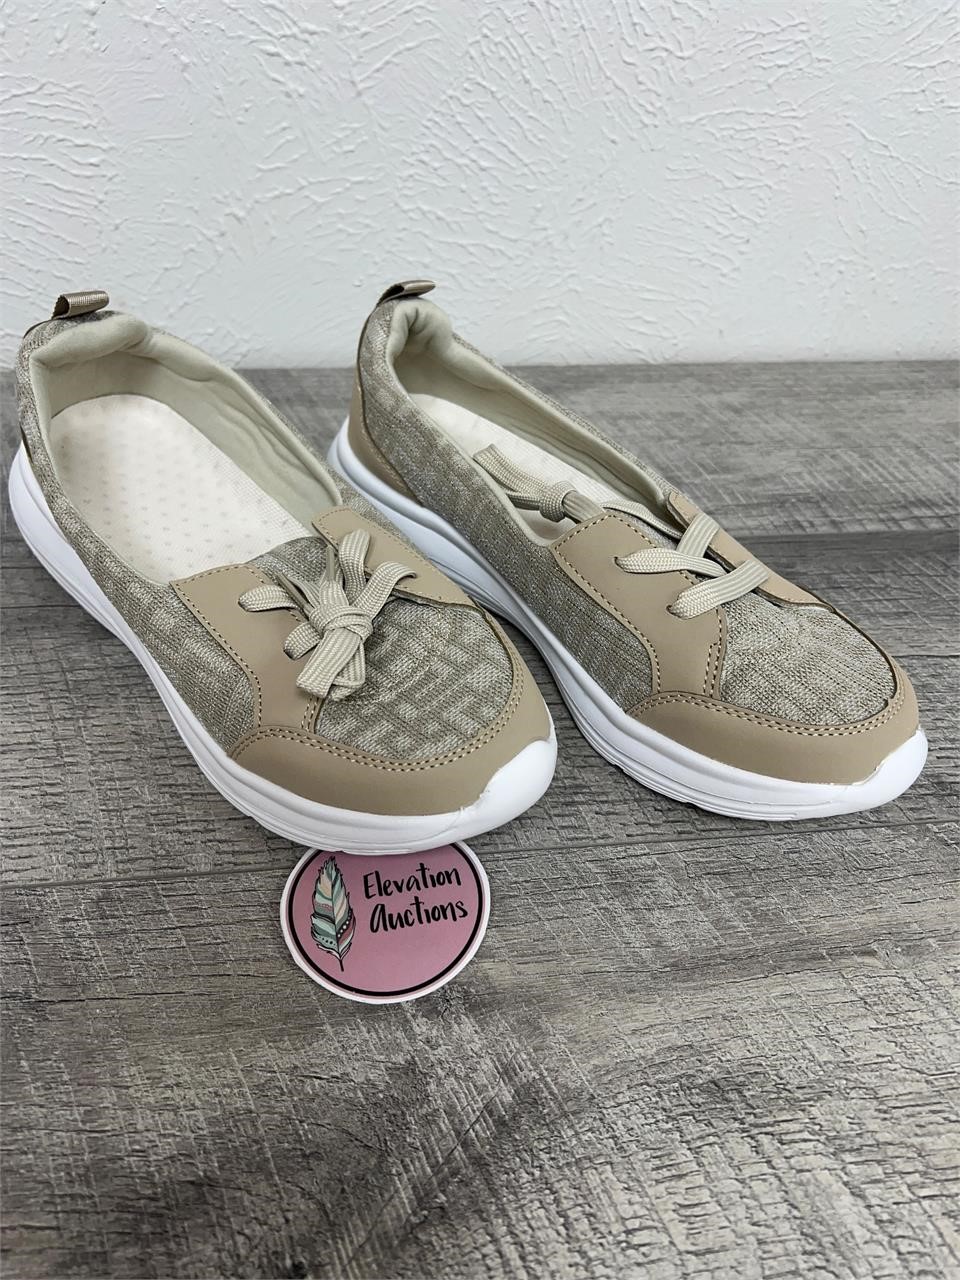 Size 9 Women’s Slip-On Shoes in Tan